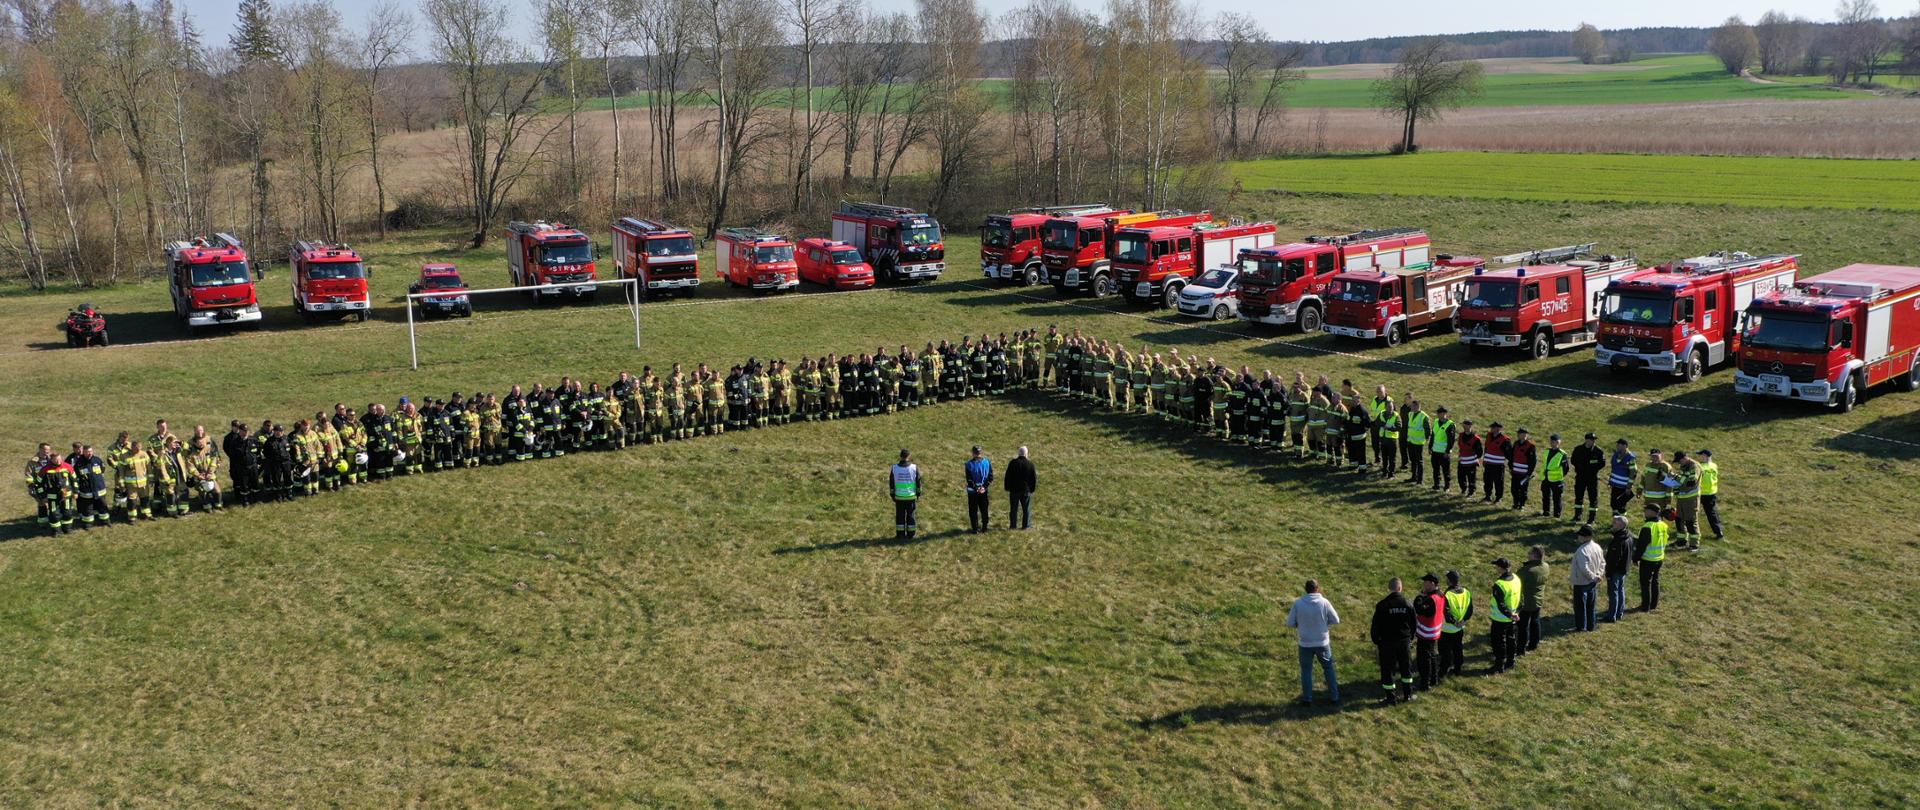 Zdjęcie przedstawia miejsce zbiórki przed Ćwiczeniami LASY 2022. Strażacy ustawieni w dwuszeregu słuchają kierujące działaniem ratowniczym. W tle samochody strażackie oraz lasy i pola.